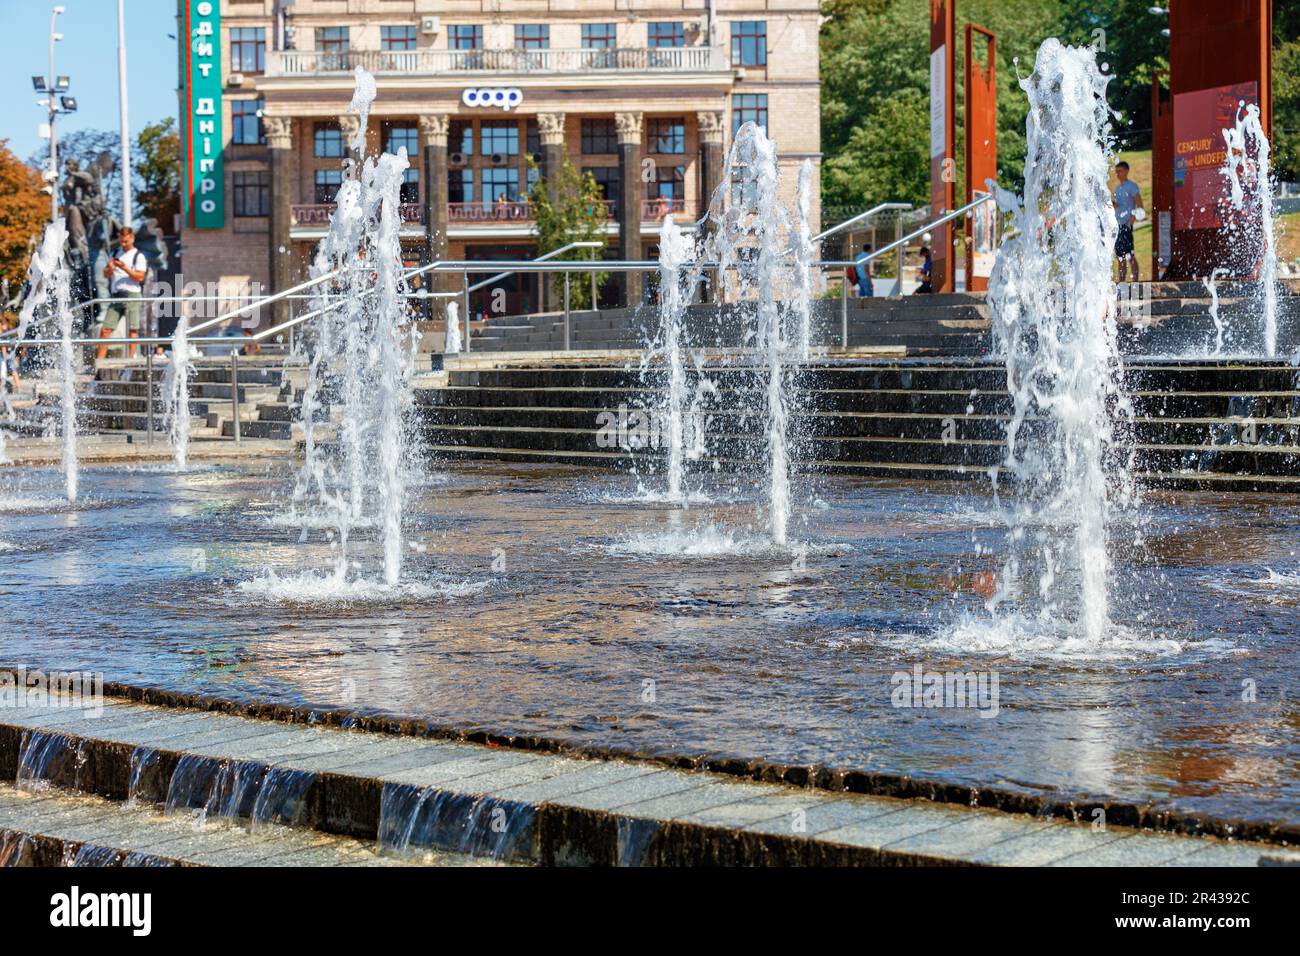 Jet fontana sulla piazza centrale di Kyiv in un giorno d'estate. Concetto di tempo libero. È il momento di rinfrescarsi. Immagine ravvicinata.08.30.20. Kiev, Ucraina. Foto Stock